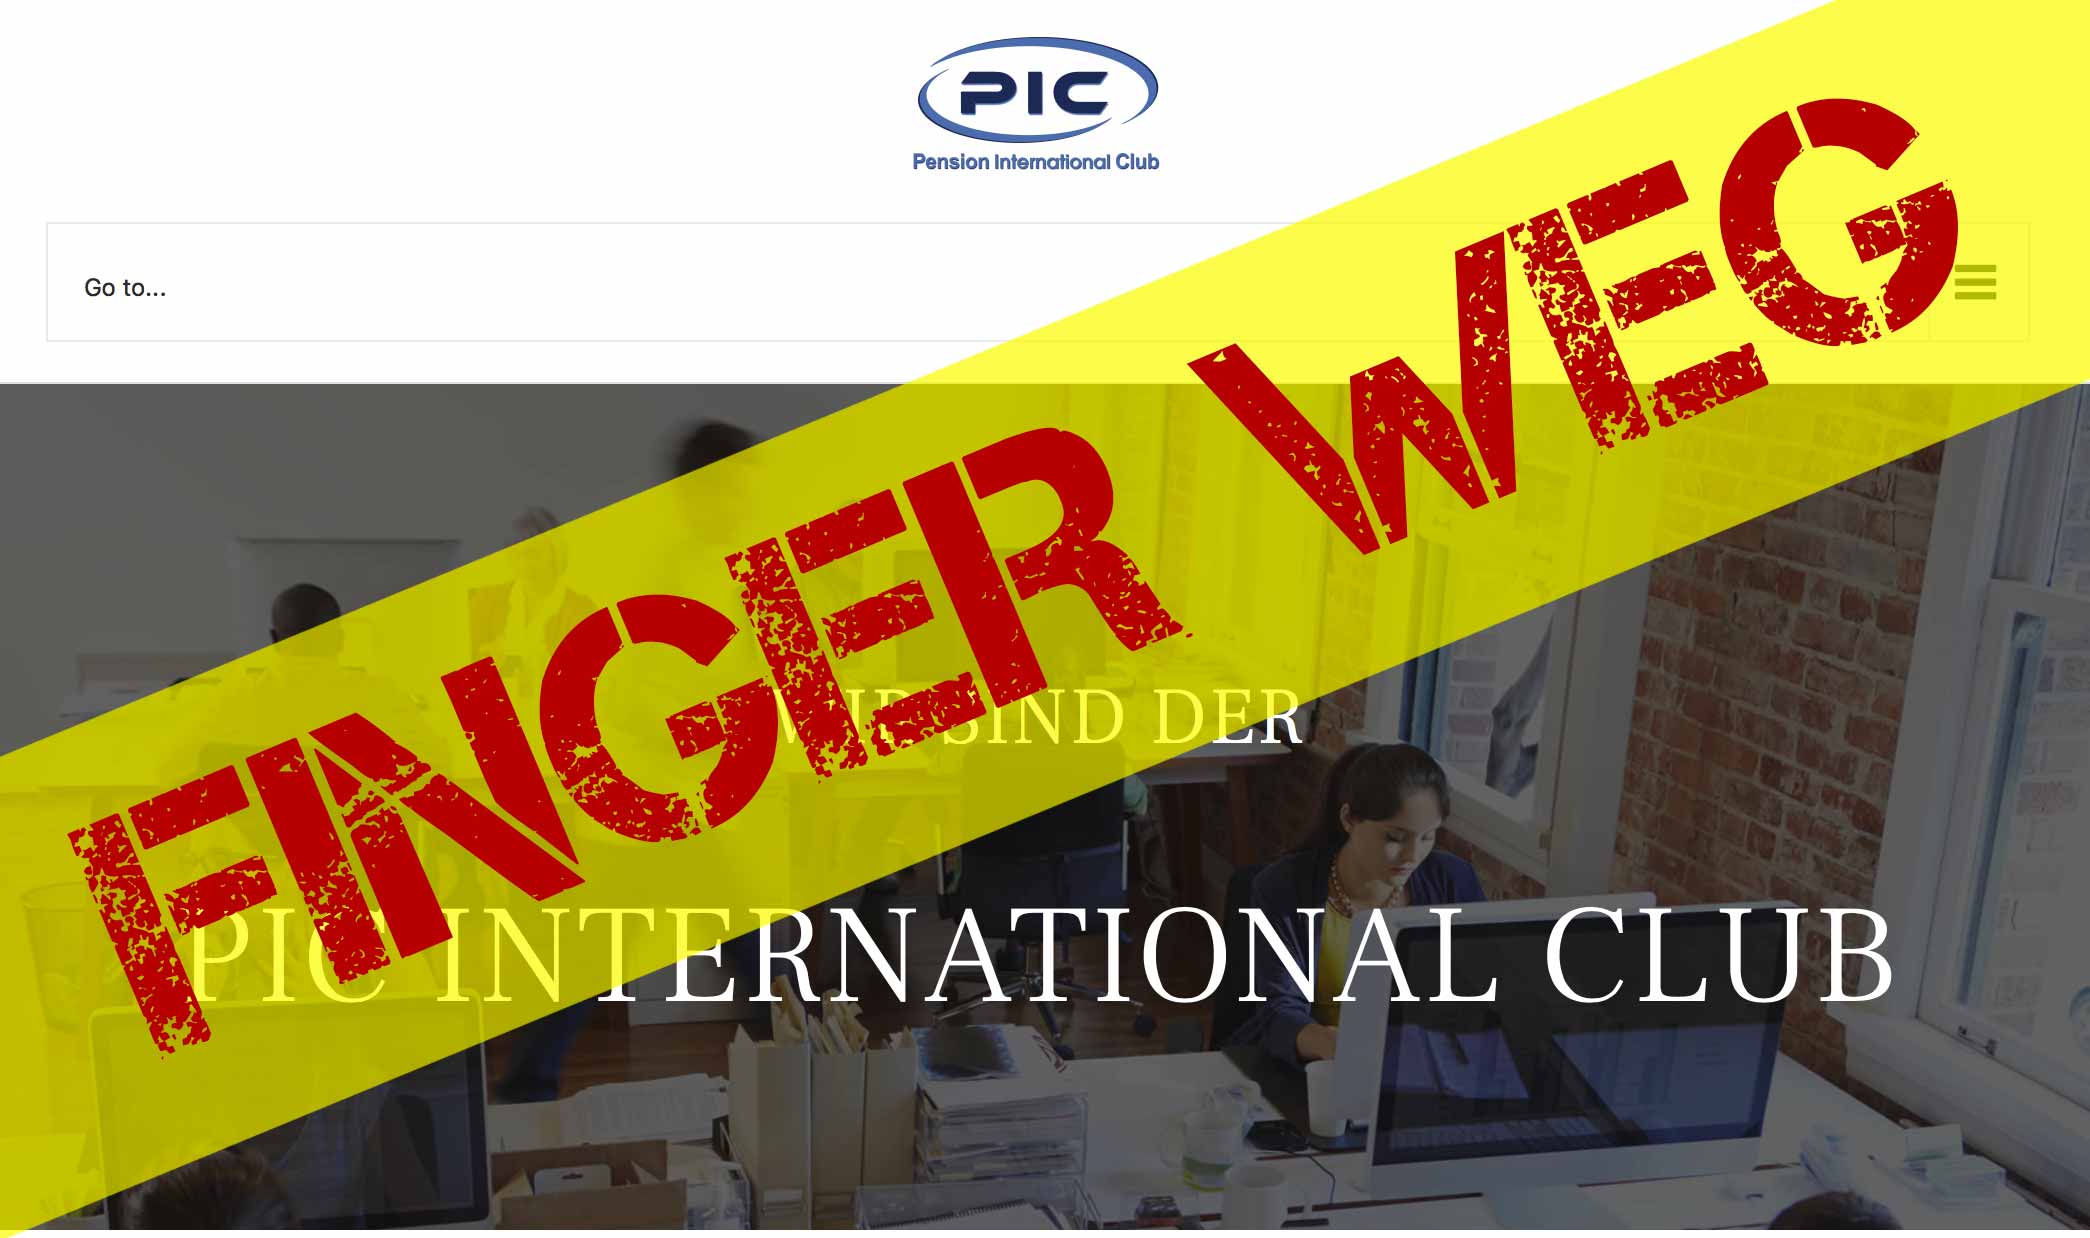 PIC - Pension International Club